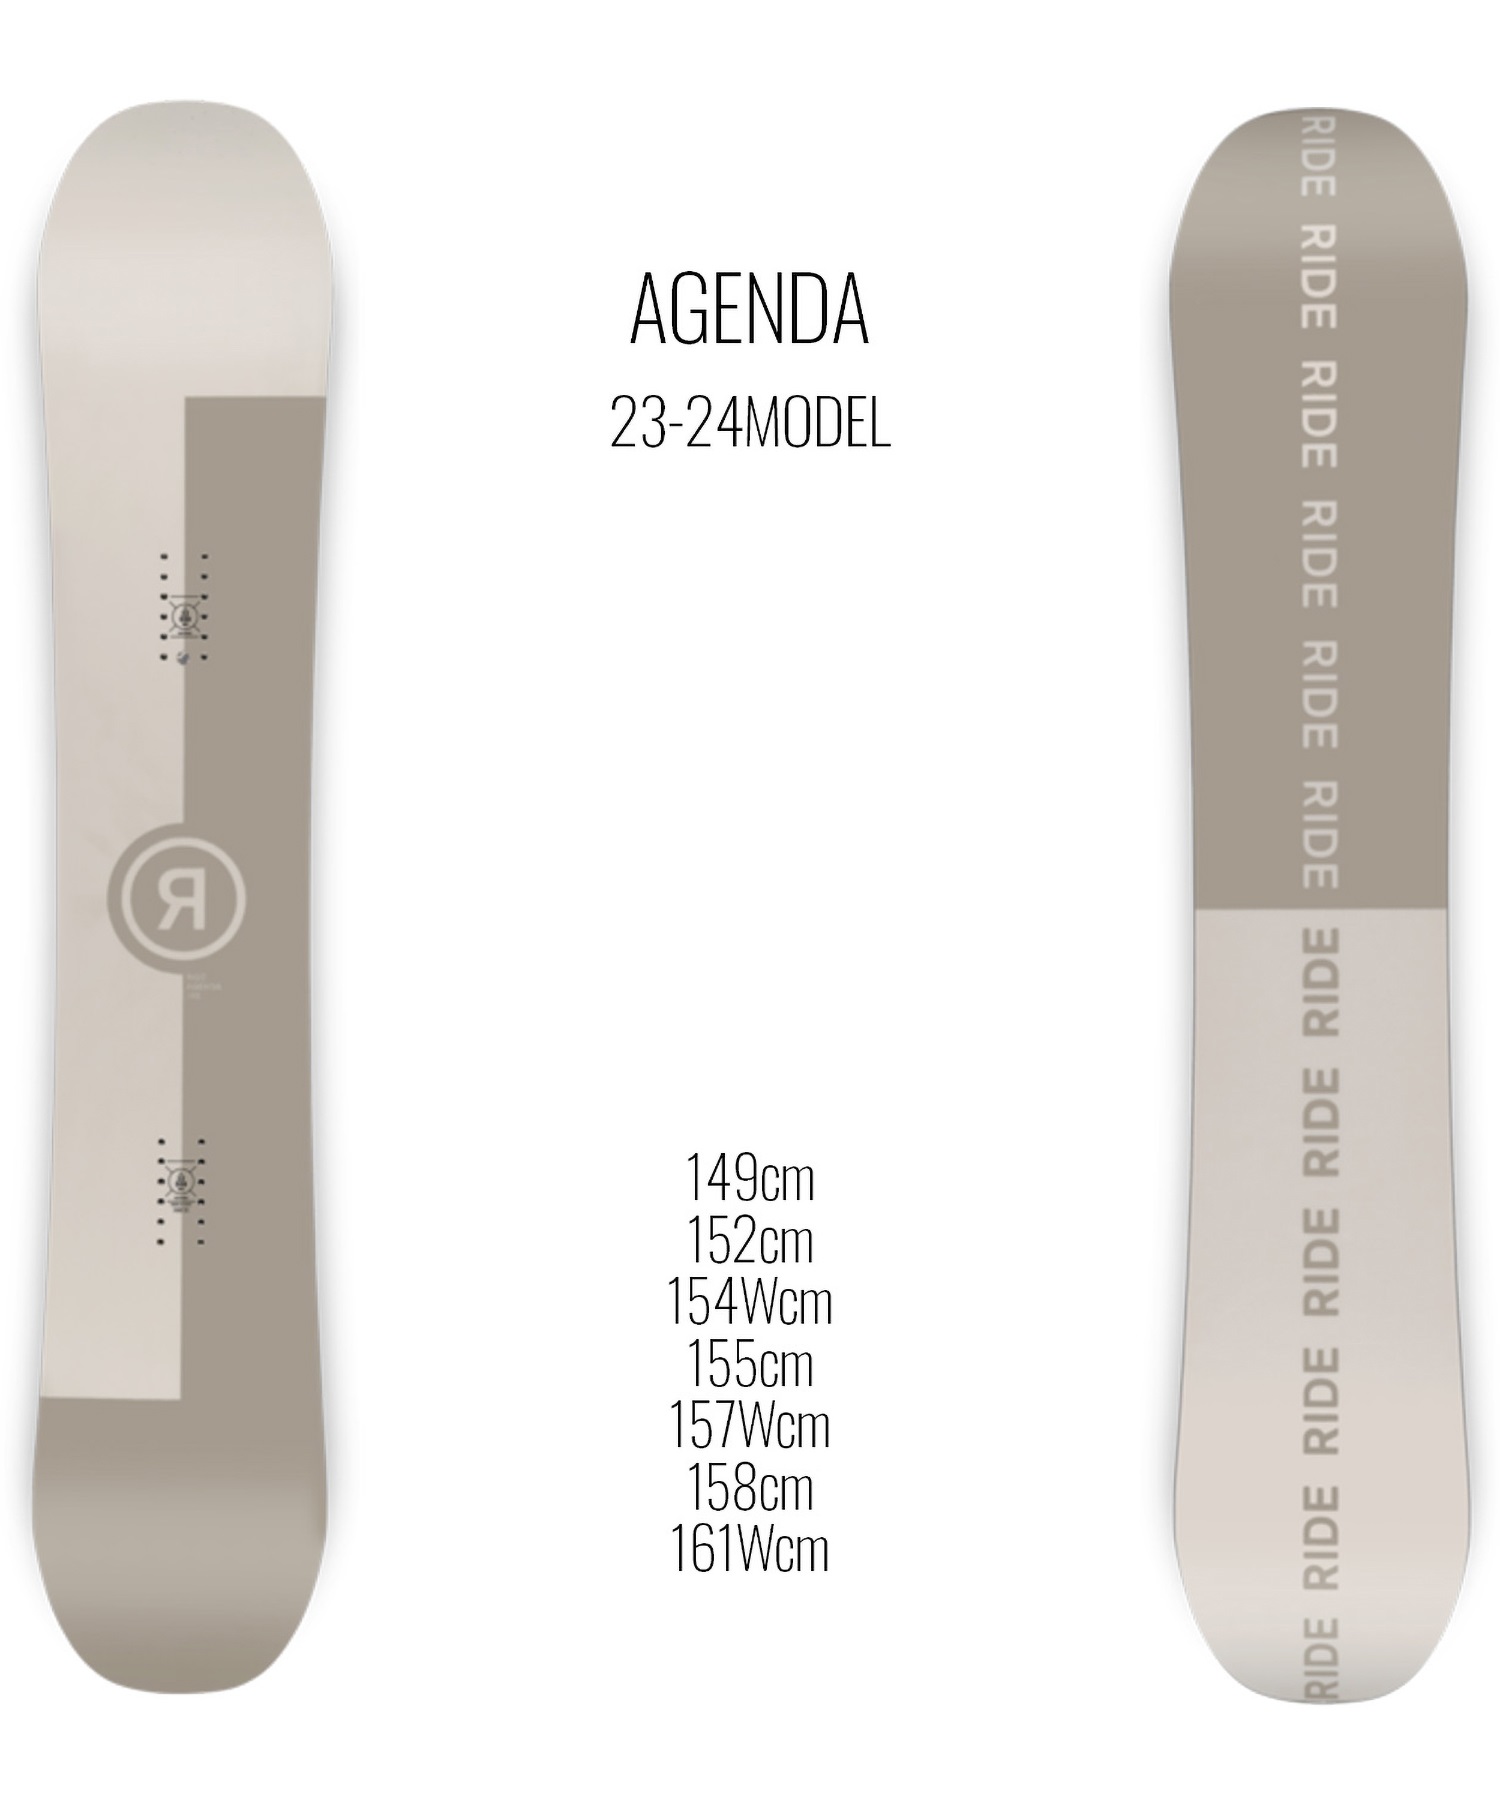 22-23 152cm】RIDE agenda FLUX EM 2点セット-